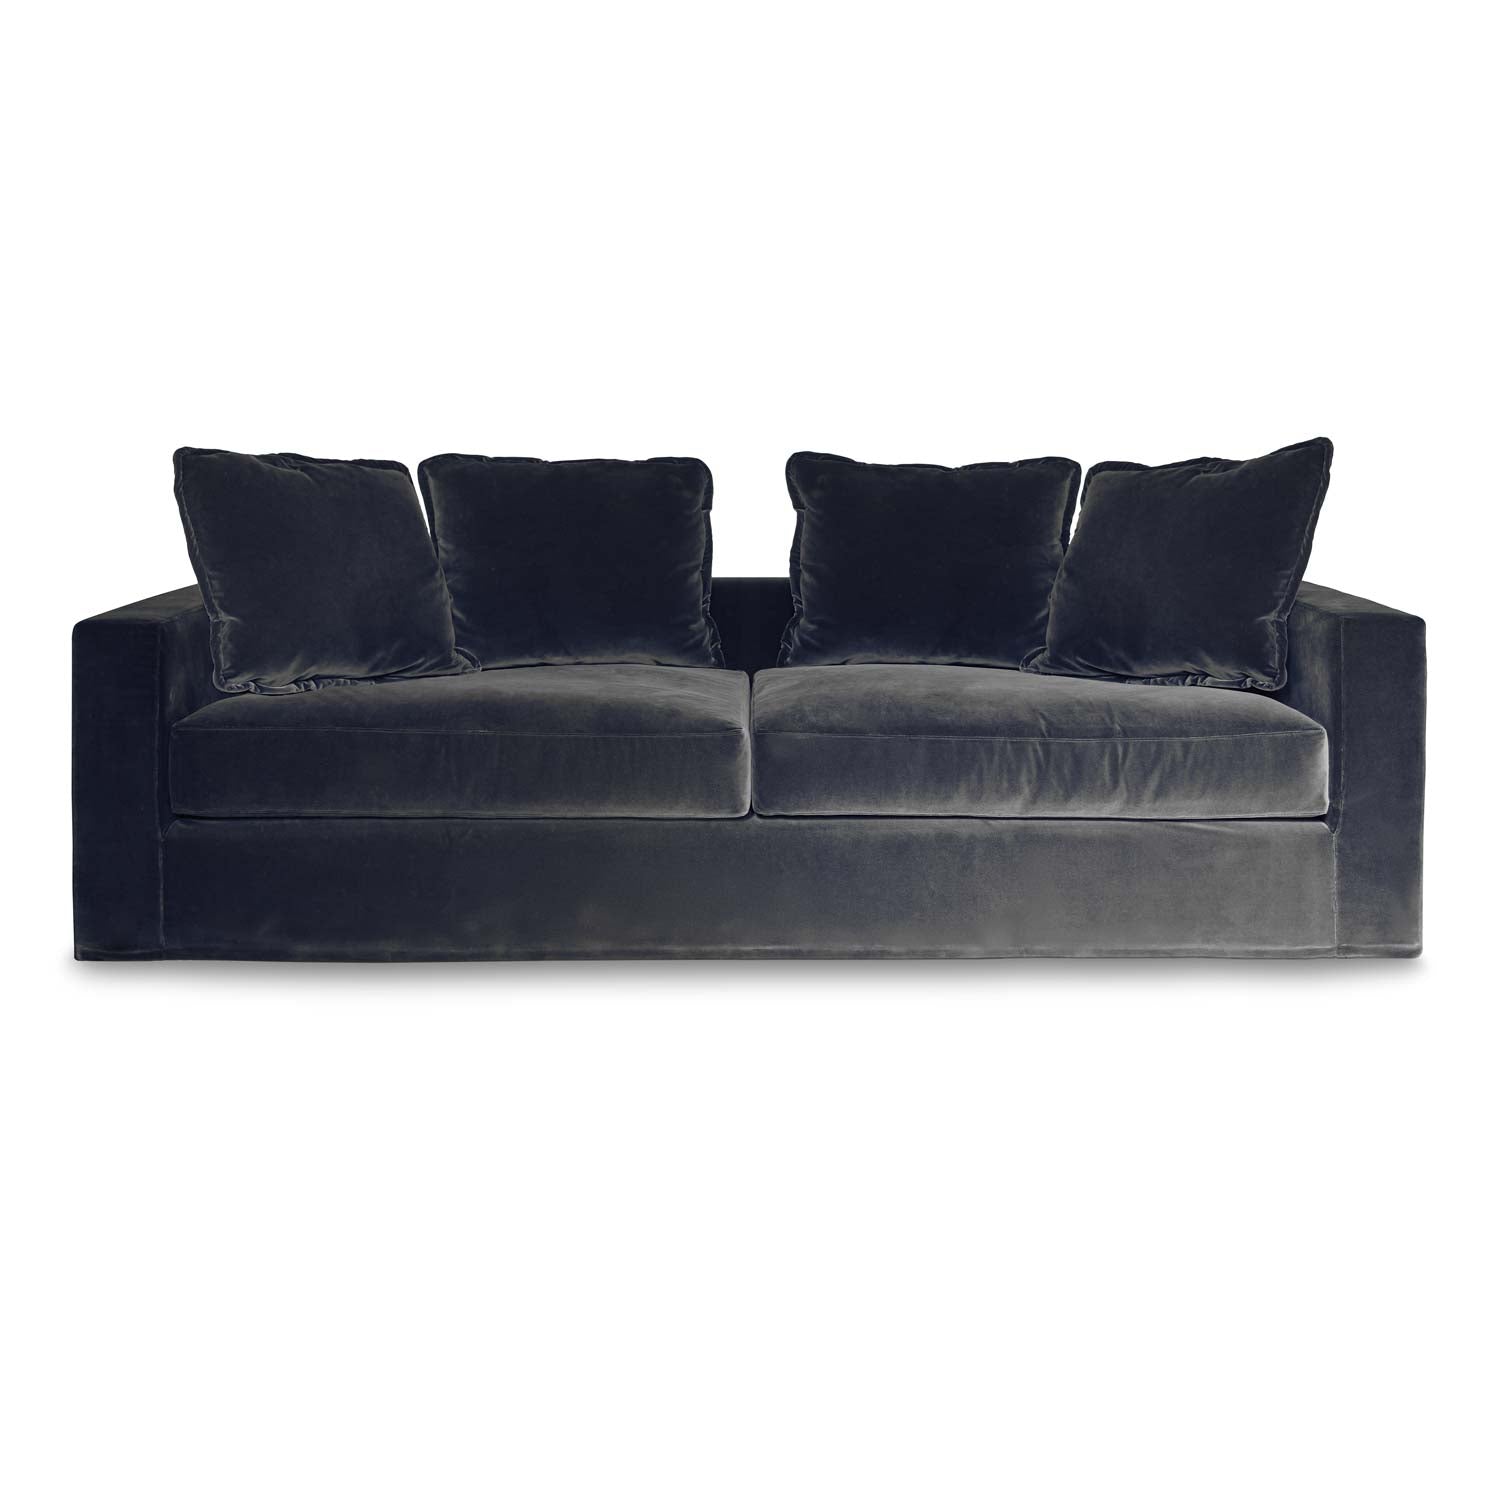 Luxurious Living Space, black velvet 3 seater sofa